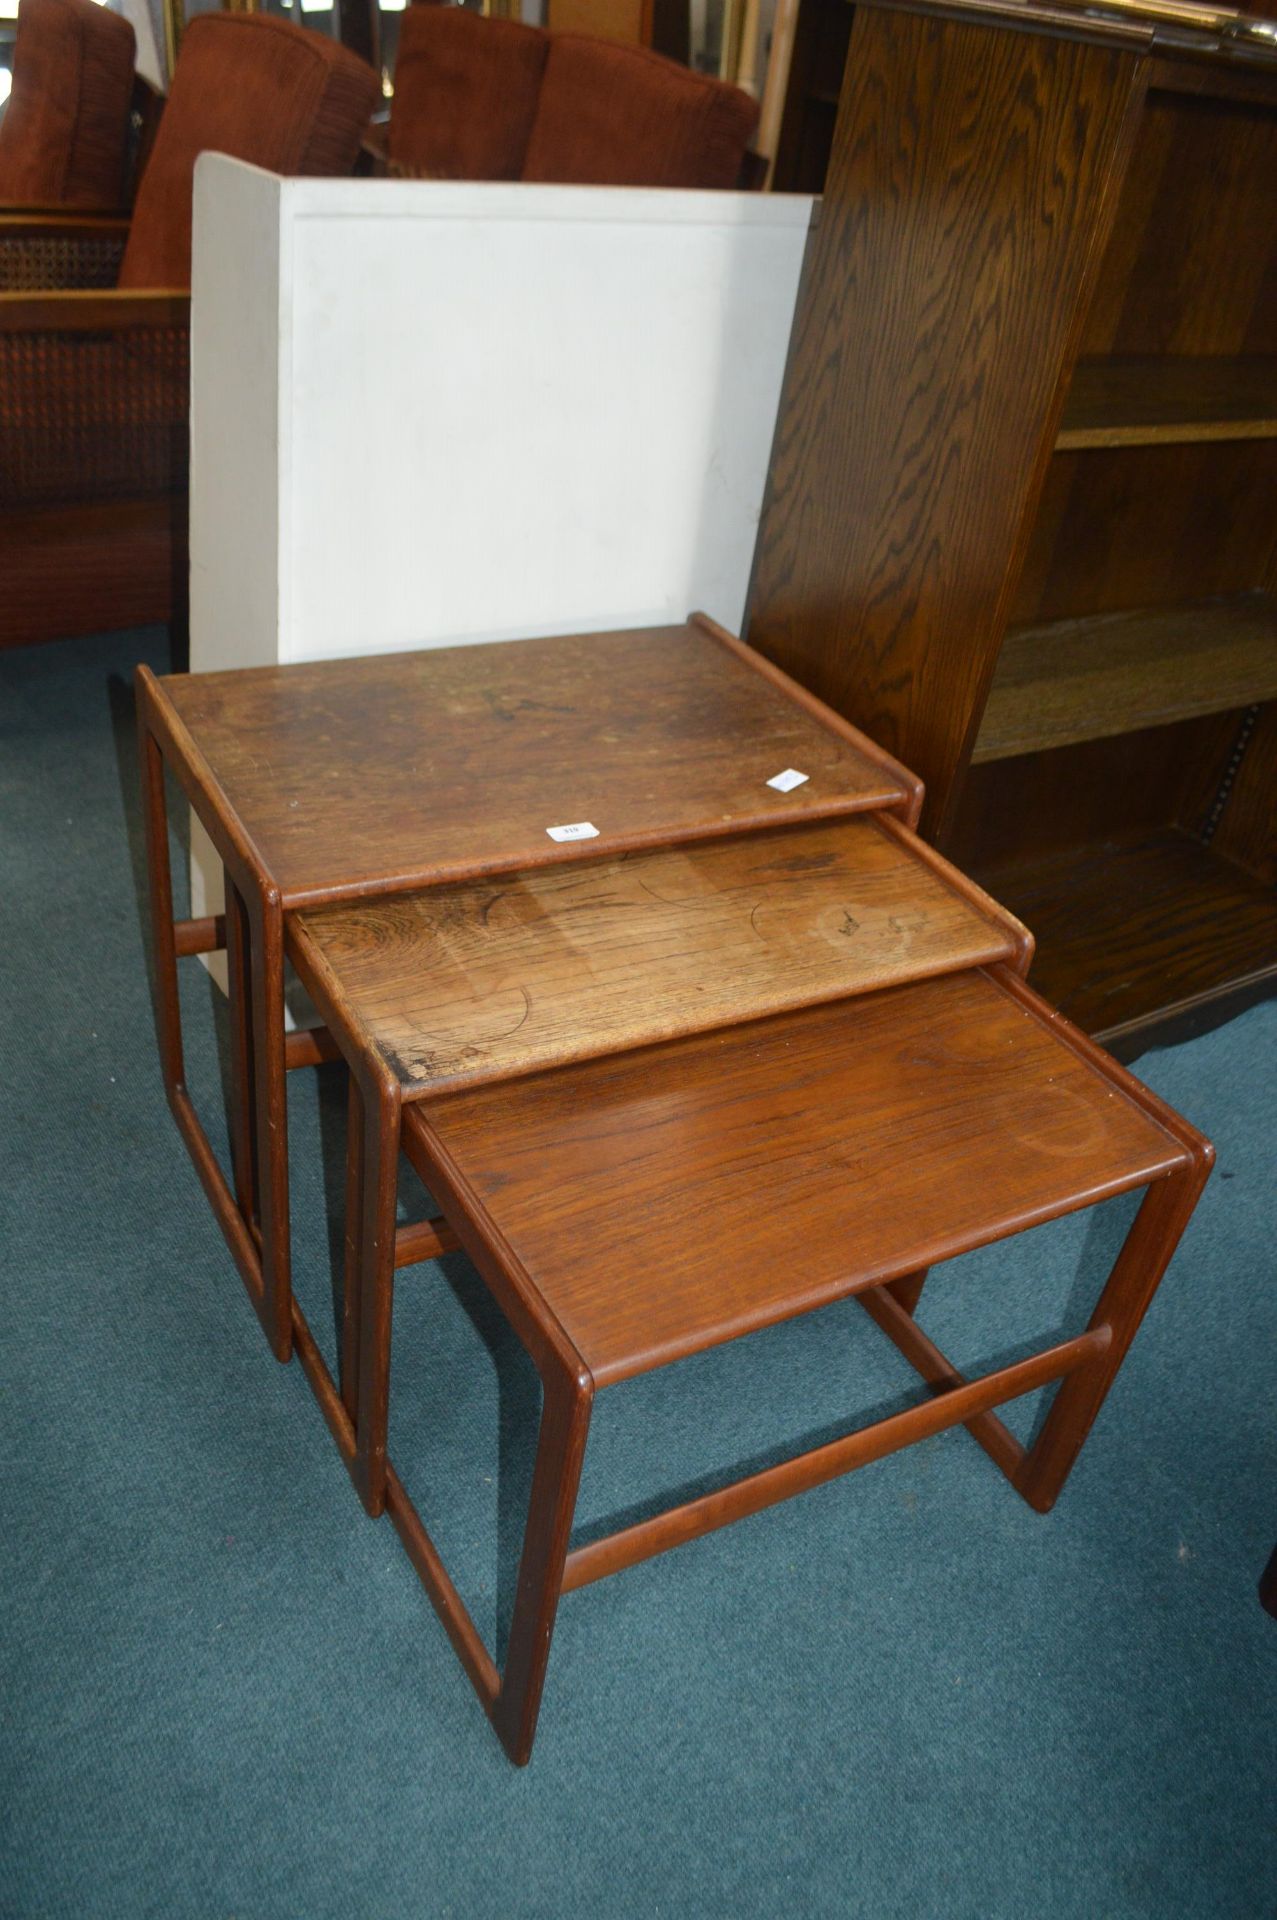 Retro Danish Teak Nest of Tables for Restoration